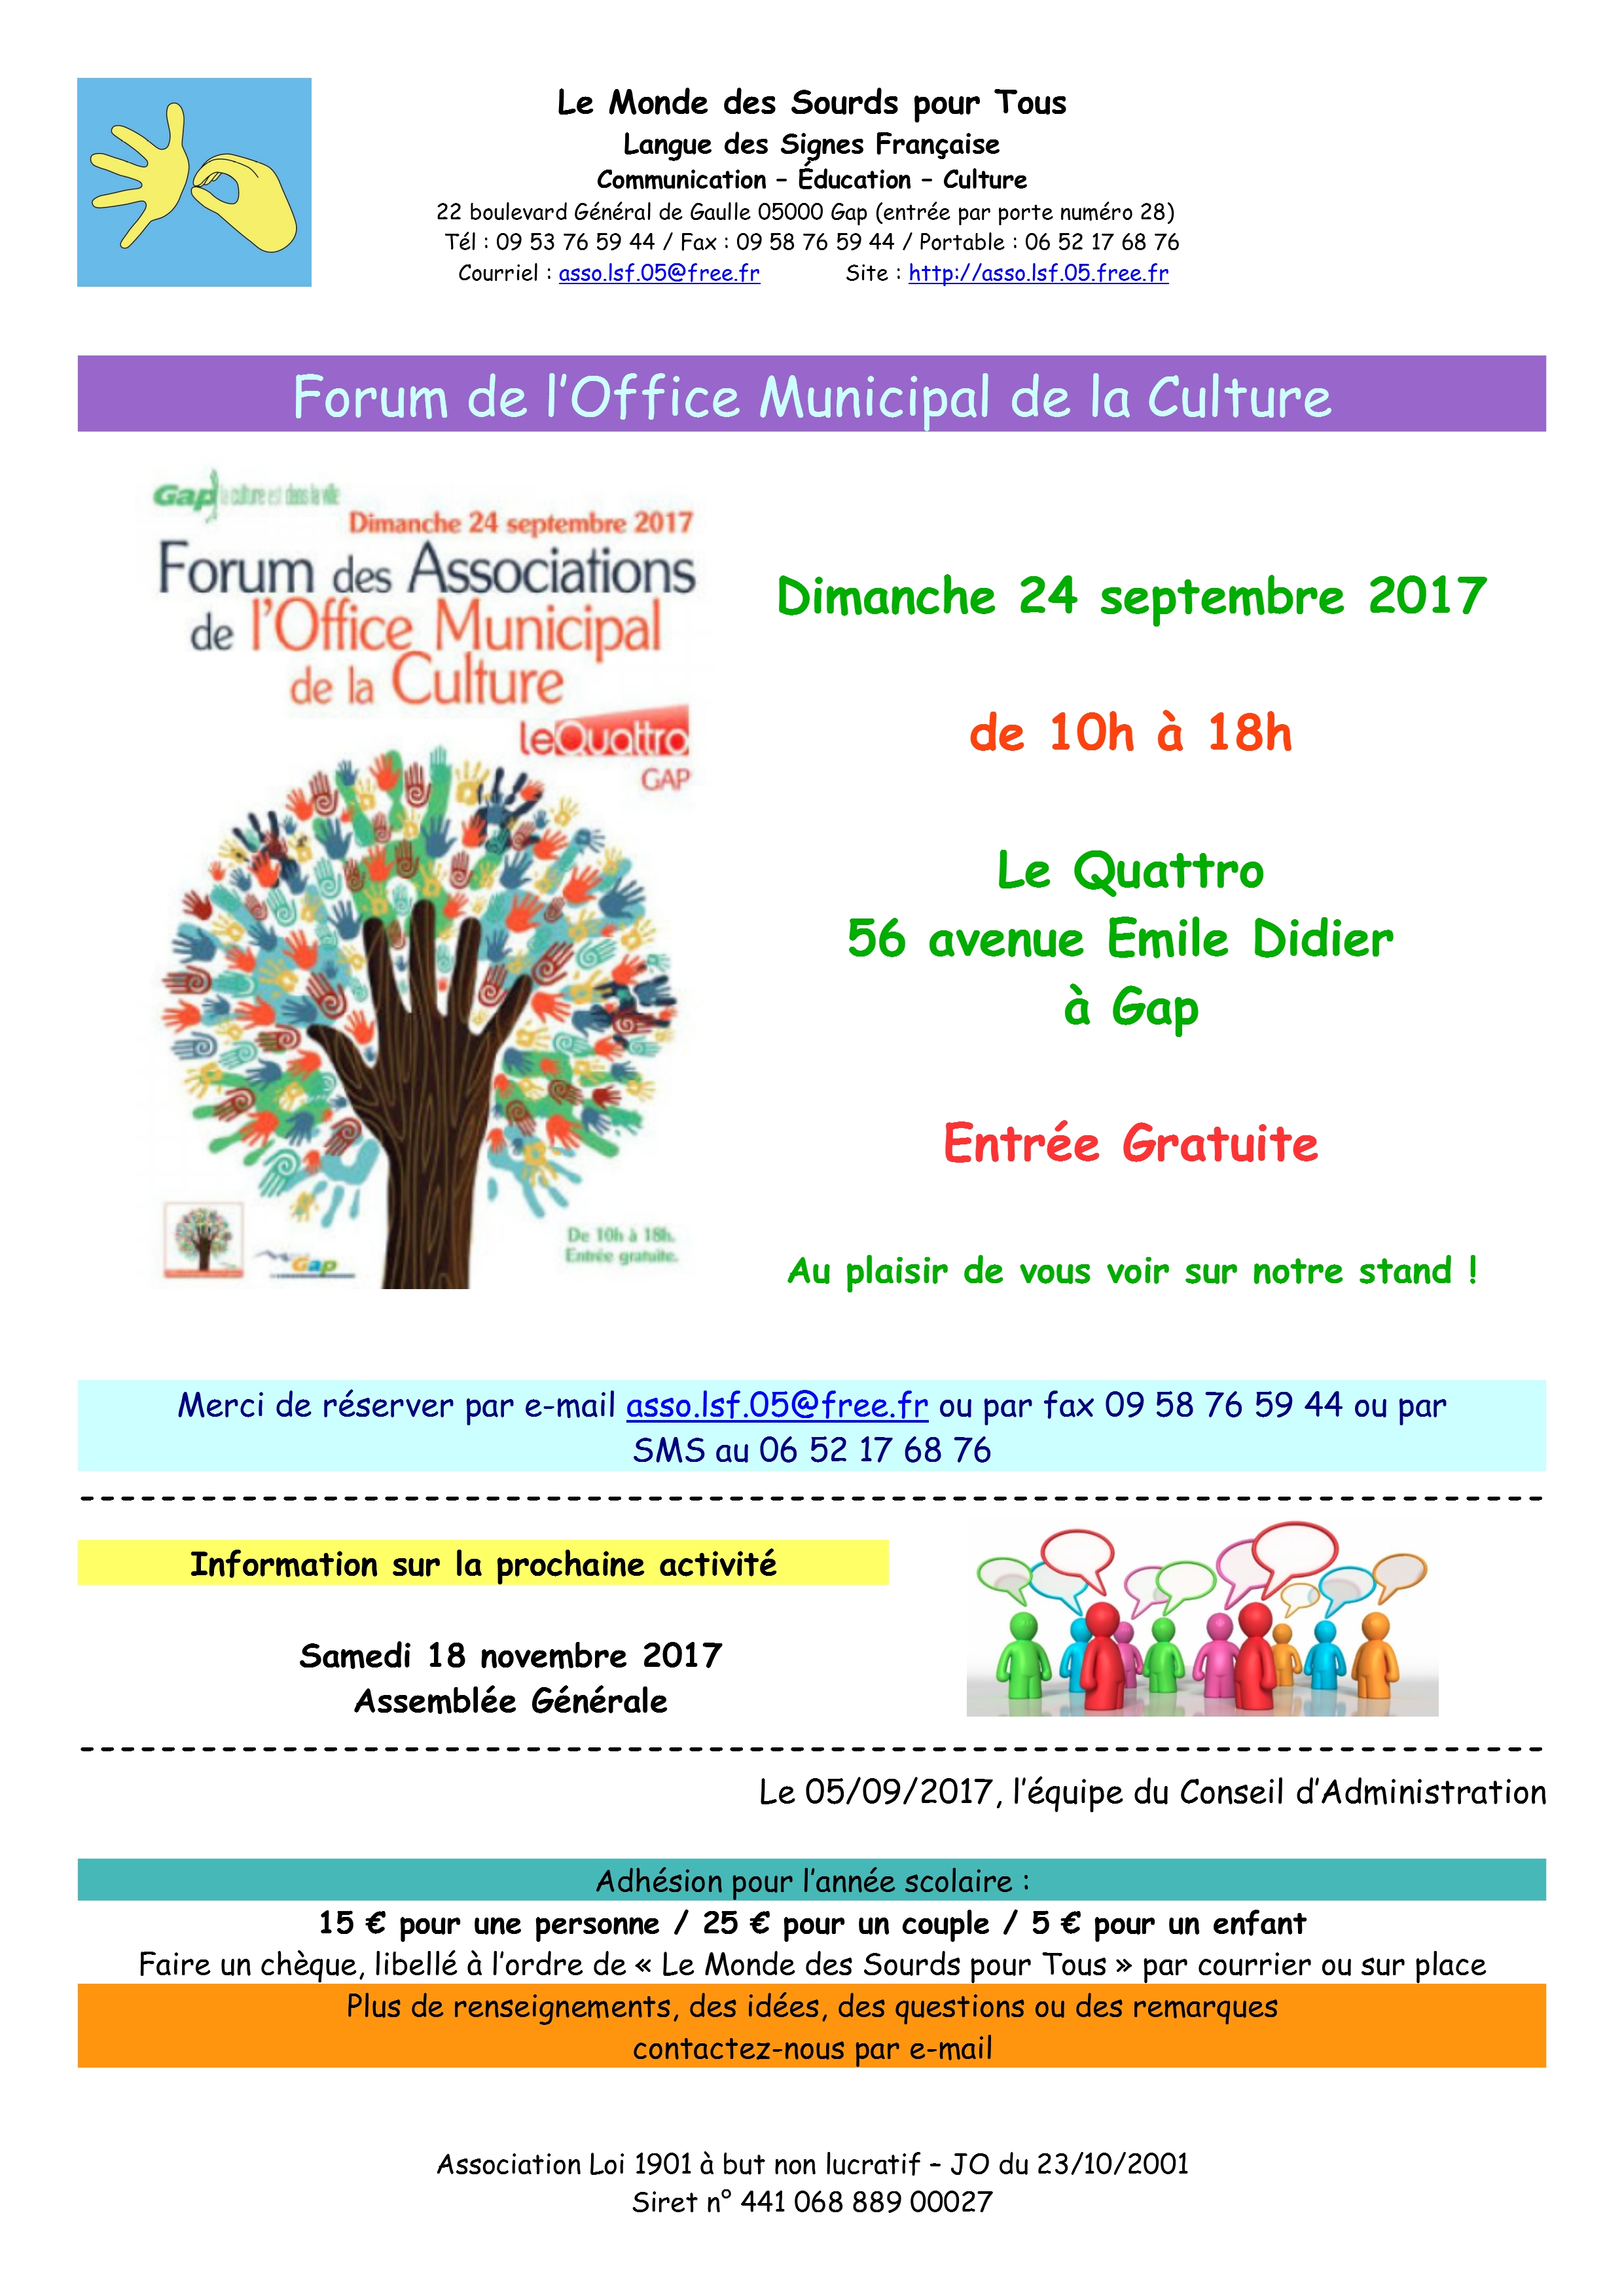 Affiche Forum Office Municipal de la Culture 2017